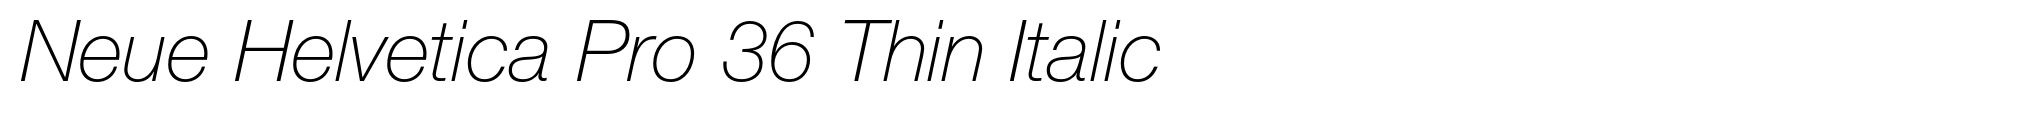 Neue Helvetica Pro 36 Thin Italic image